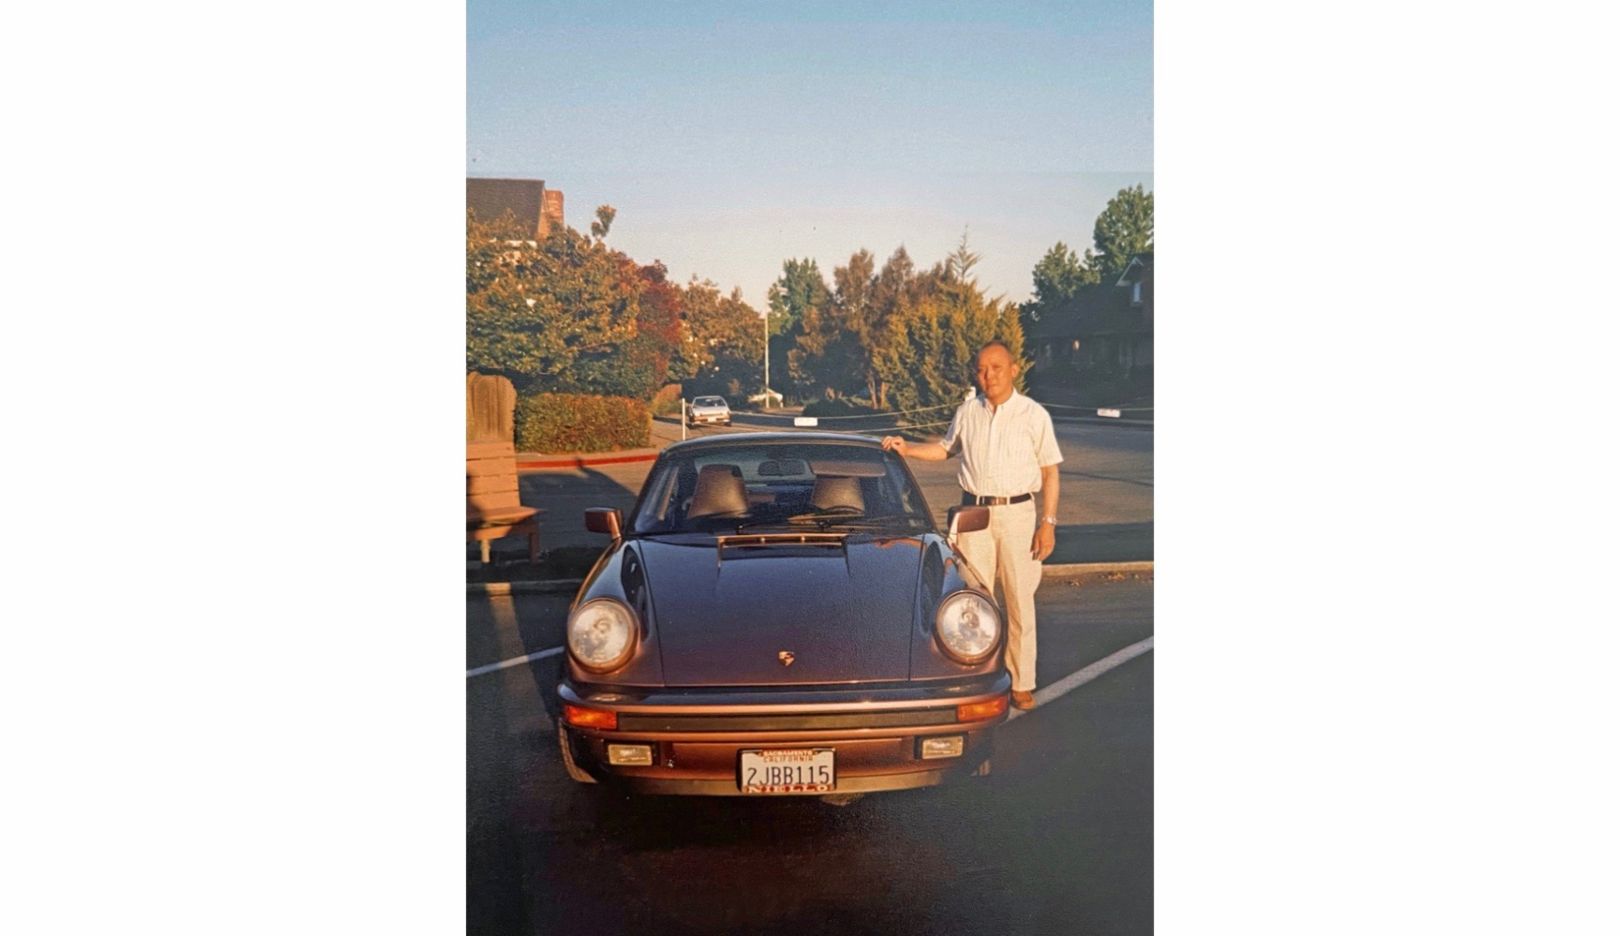 Una volta in pensione, George Wu acquistò la sua prima Porsche 911. Ai tempi, il figlio, l’attore Daniel Wu, aveva 12 anni ed ebbe il privilegio di sceglierne il colore: il raro rosso cassis.